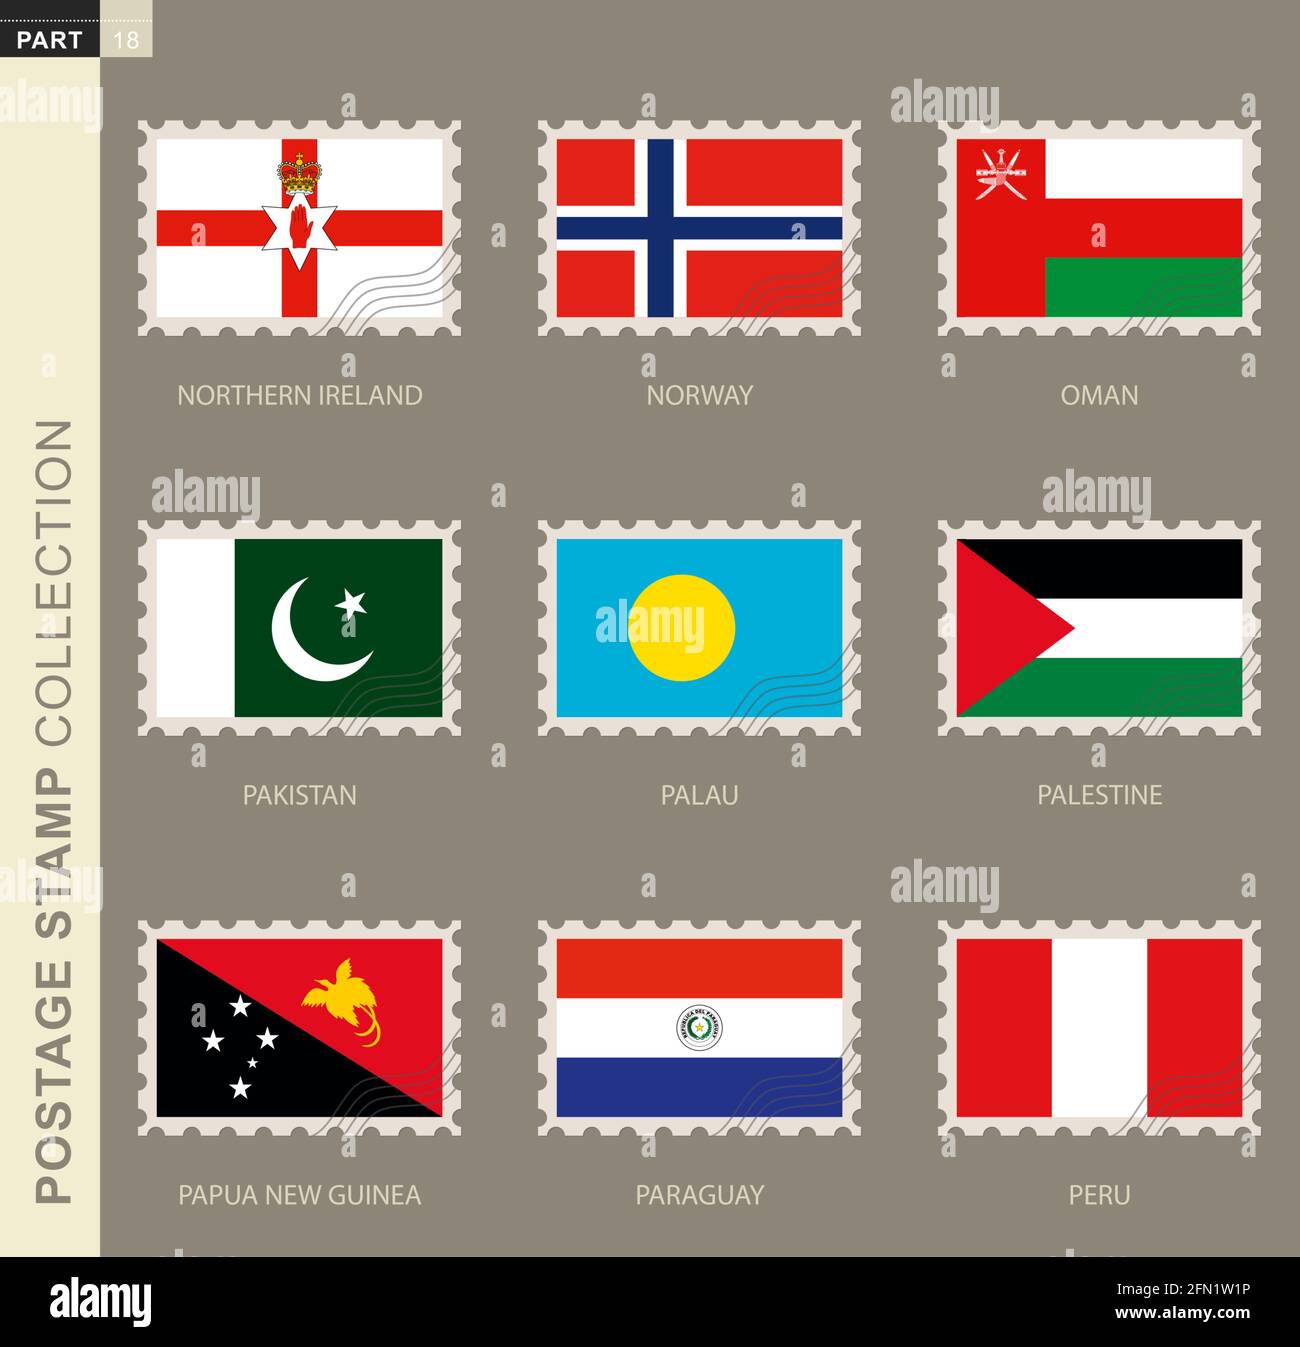 Timbre-poste avec drapeau, collection de 9 drapeau : Irlande du Nord, Norvège, Oman, Pakistan, Palaos, Palestine, Papouasie-Nouvelle-Guinée, Paraguay, Pérou Illustration de Vecteur